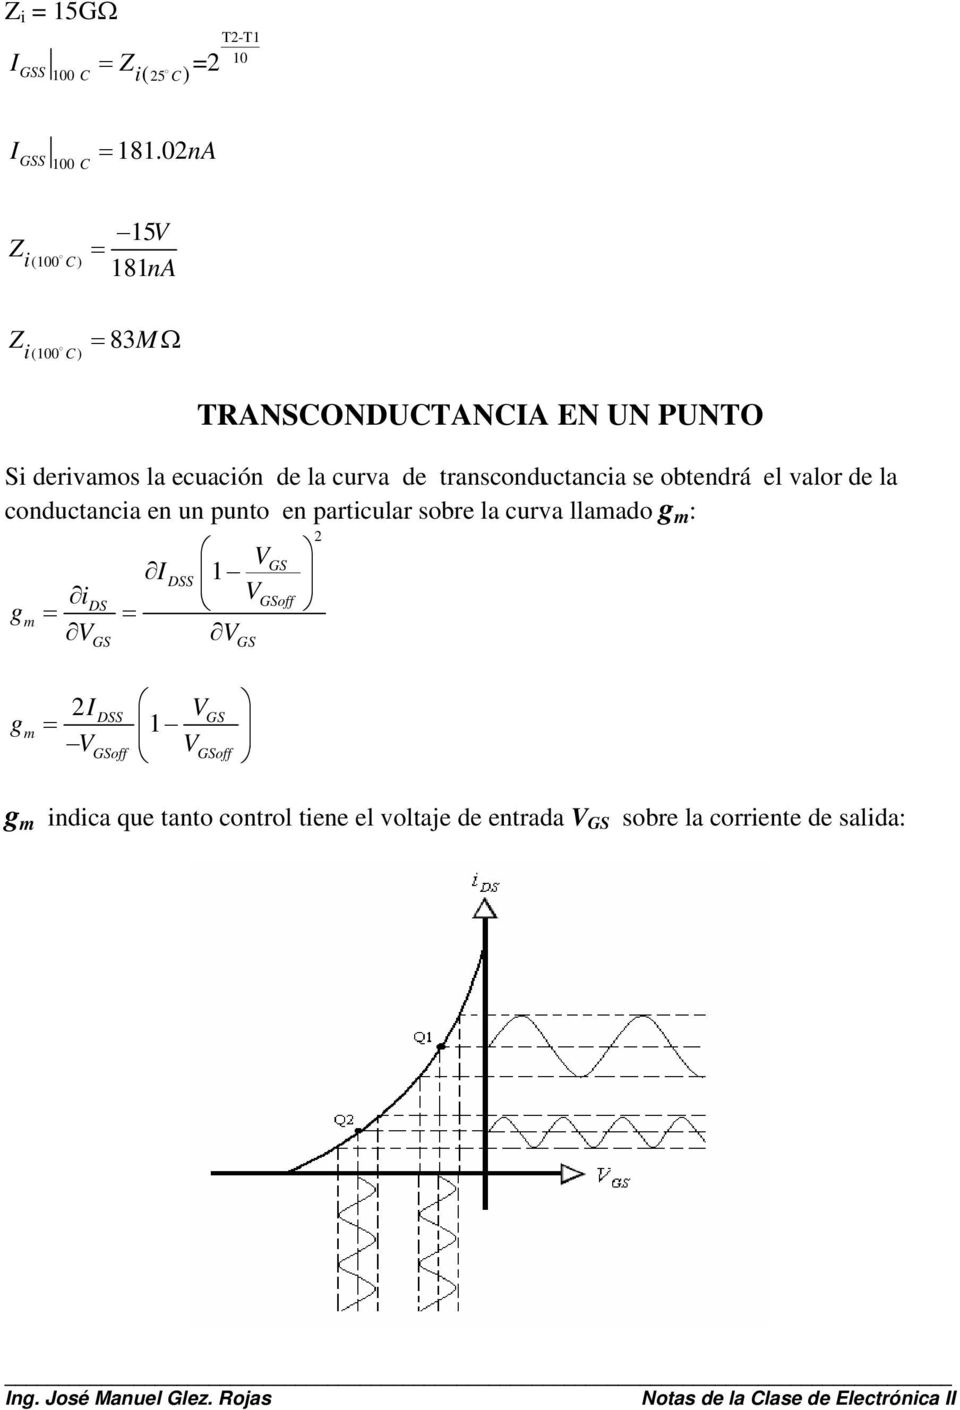 transconductancia se obtendrá el valor de la conductancia en un punto en particular sobre la curva